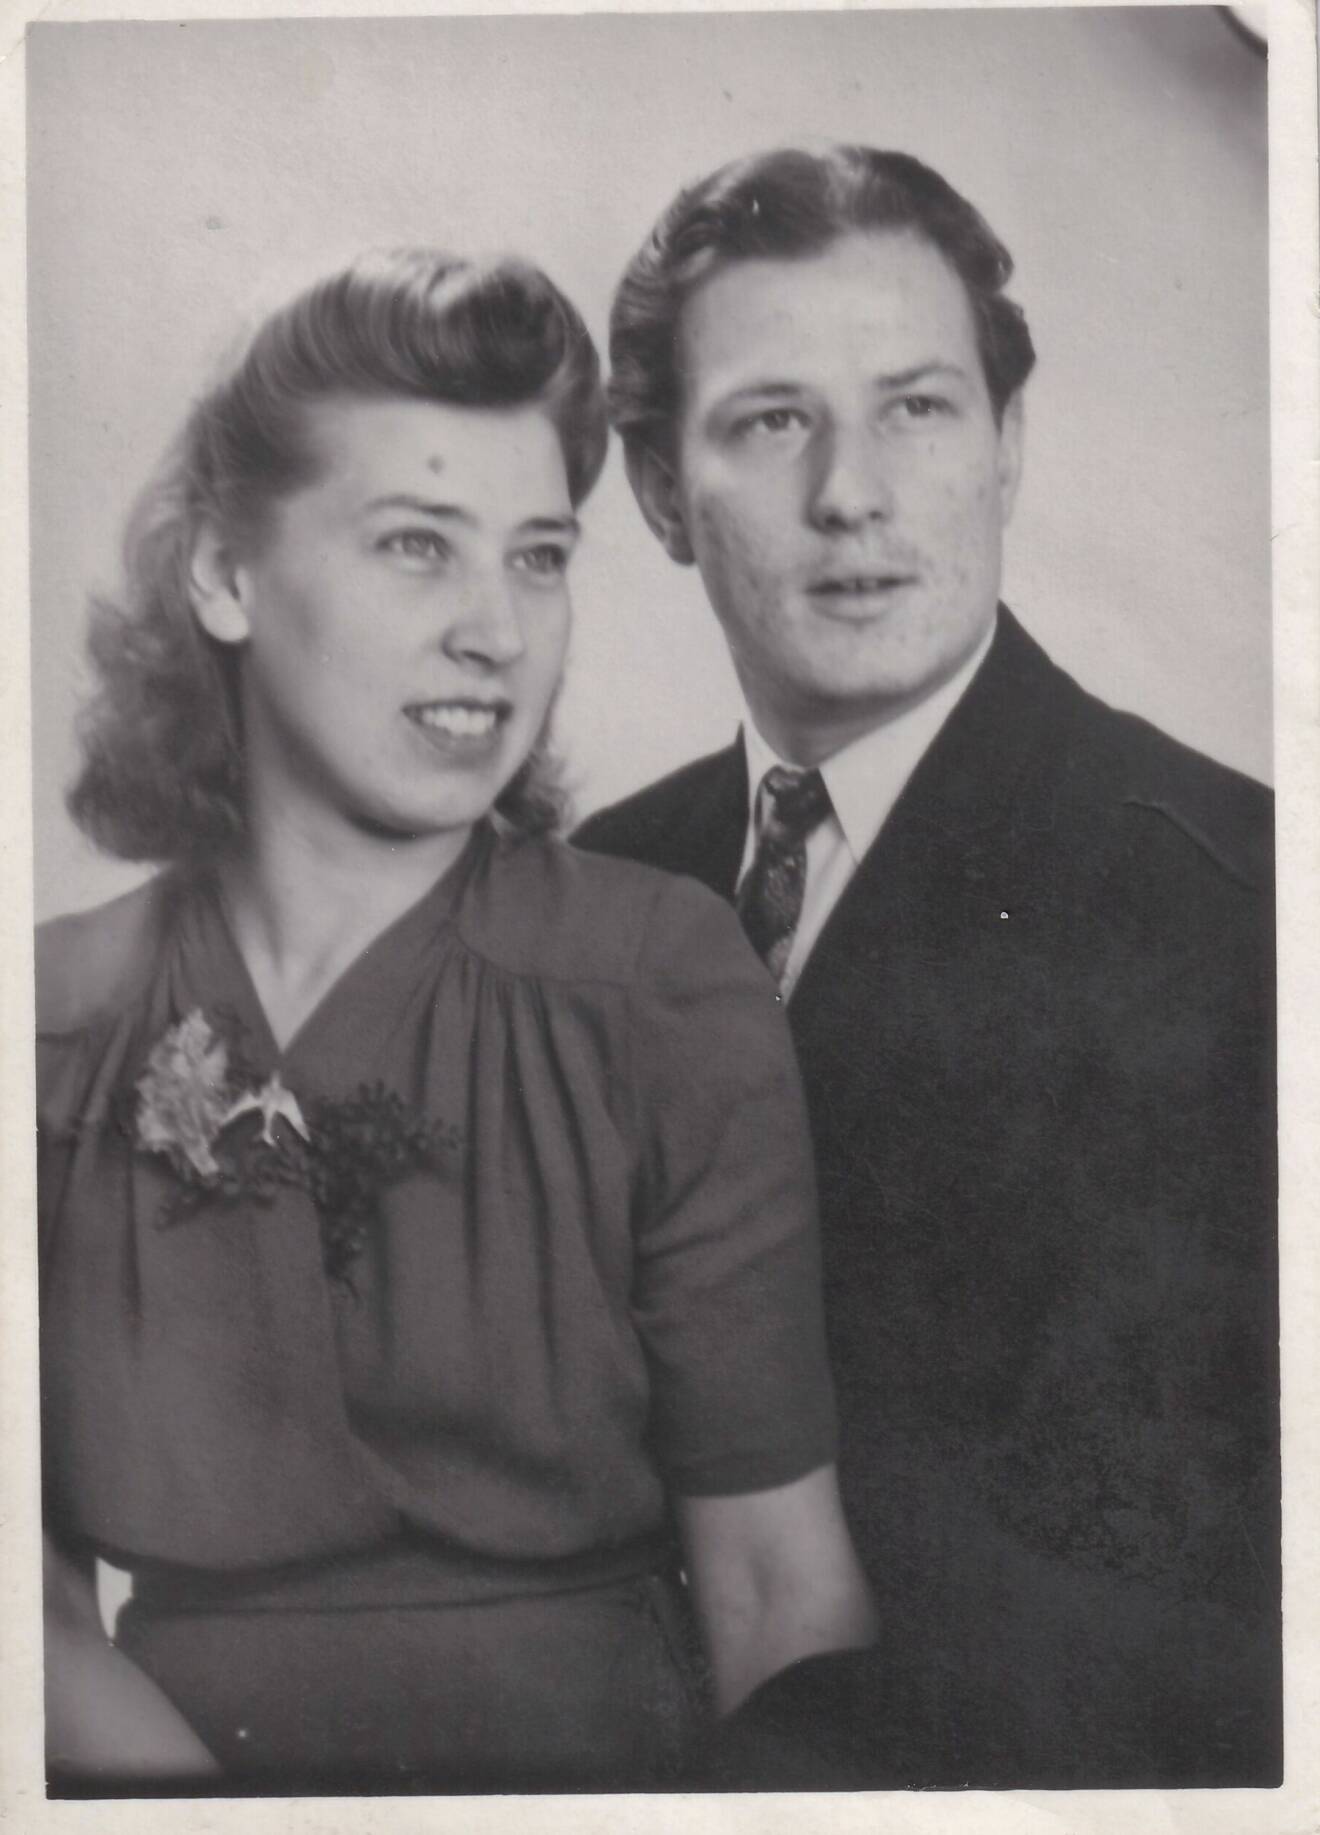 Ett gammalt svart-vitt foto av ett ungt vacker par i halvfigur - ett foto på Kerstins mormor och morfar som hon nu fått se.